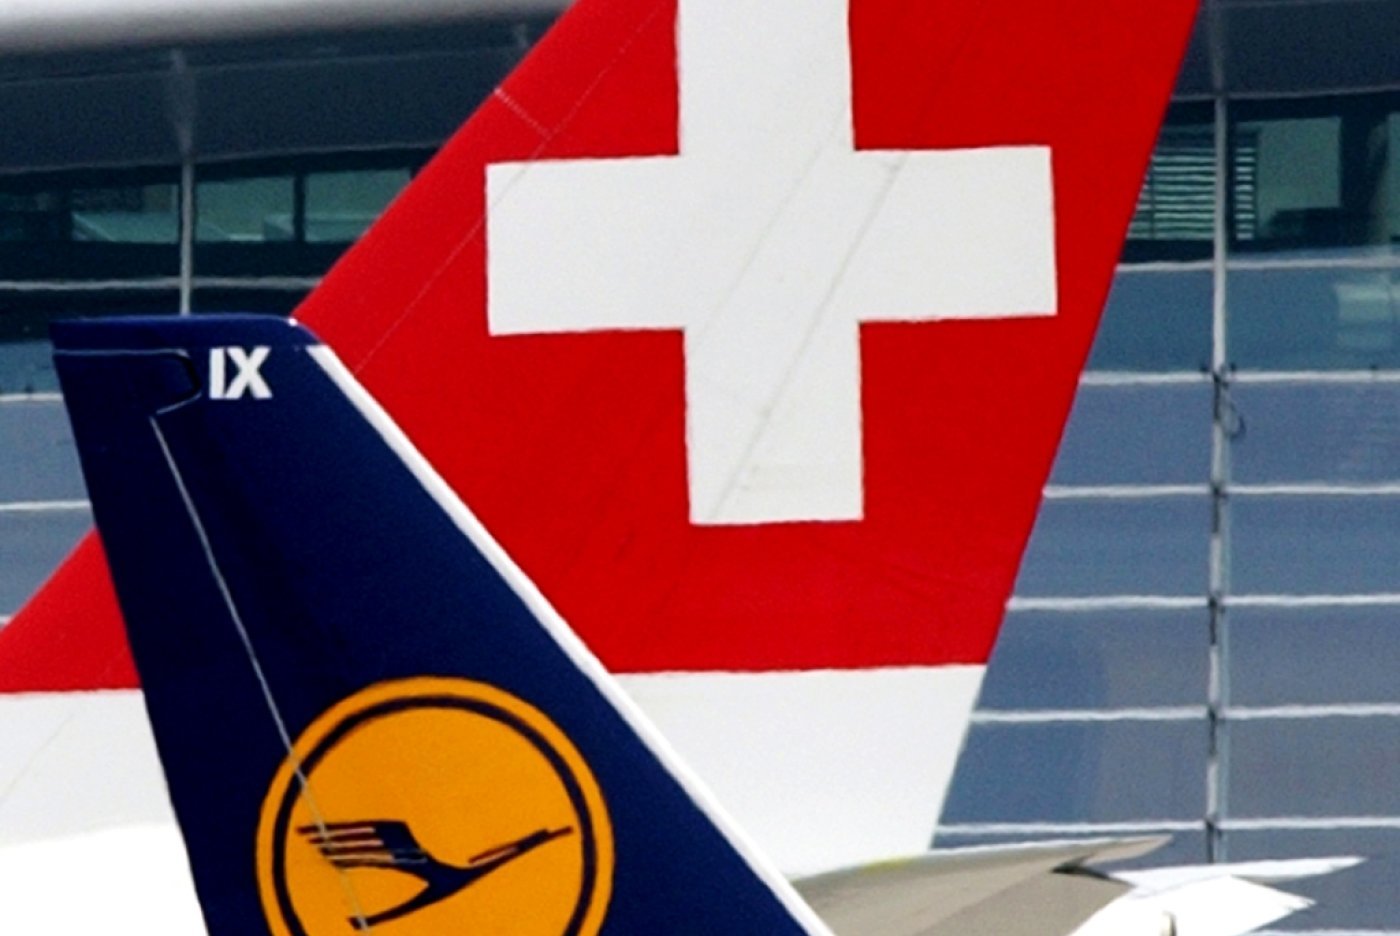 "La sécurité des passagers et de l'équipage est toujours notre priorité absolue", a précisé Lufthansa dans une déclaration transmise à l'AFP. (KEYSTONE